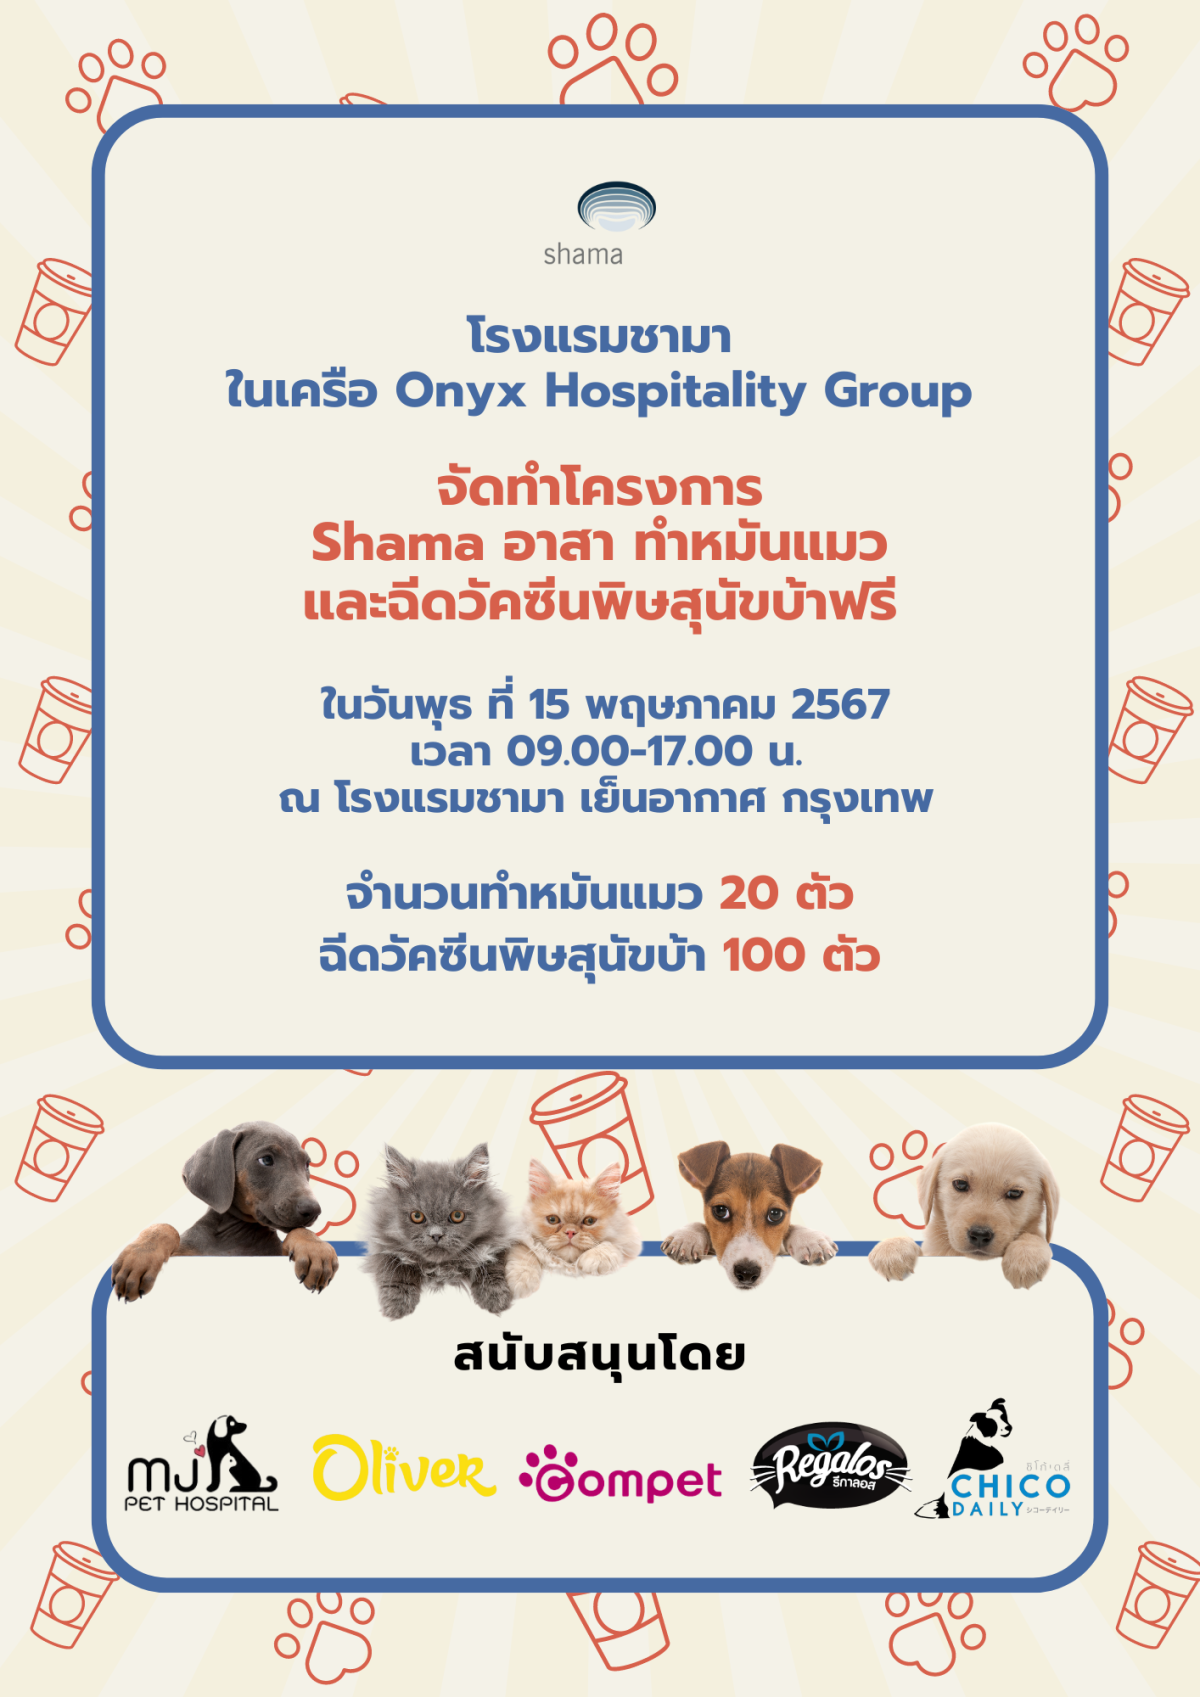 Shama Yen-Akat Bangkok โรงแรม Pet Friendly ย่านสาทร เปิดโครงการ Shama อาสา ทำหมันแมวและฉีดวัคซีนพิษสุนัขบ้าฟรี ให้แก่ชุมชนในพื้นที่ใกล้เคียง